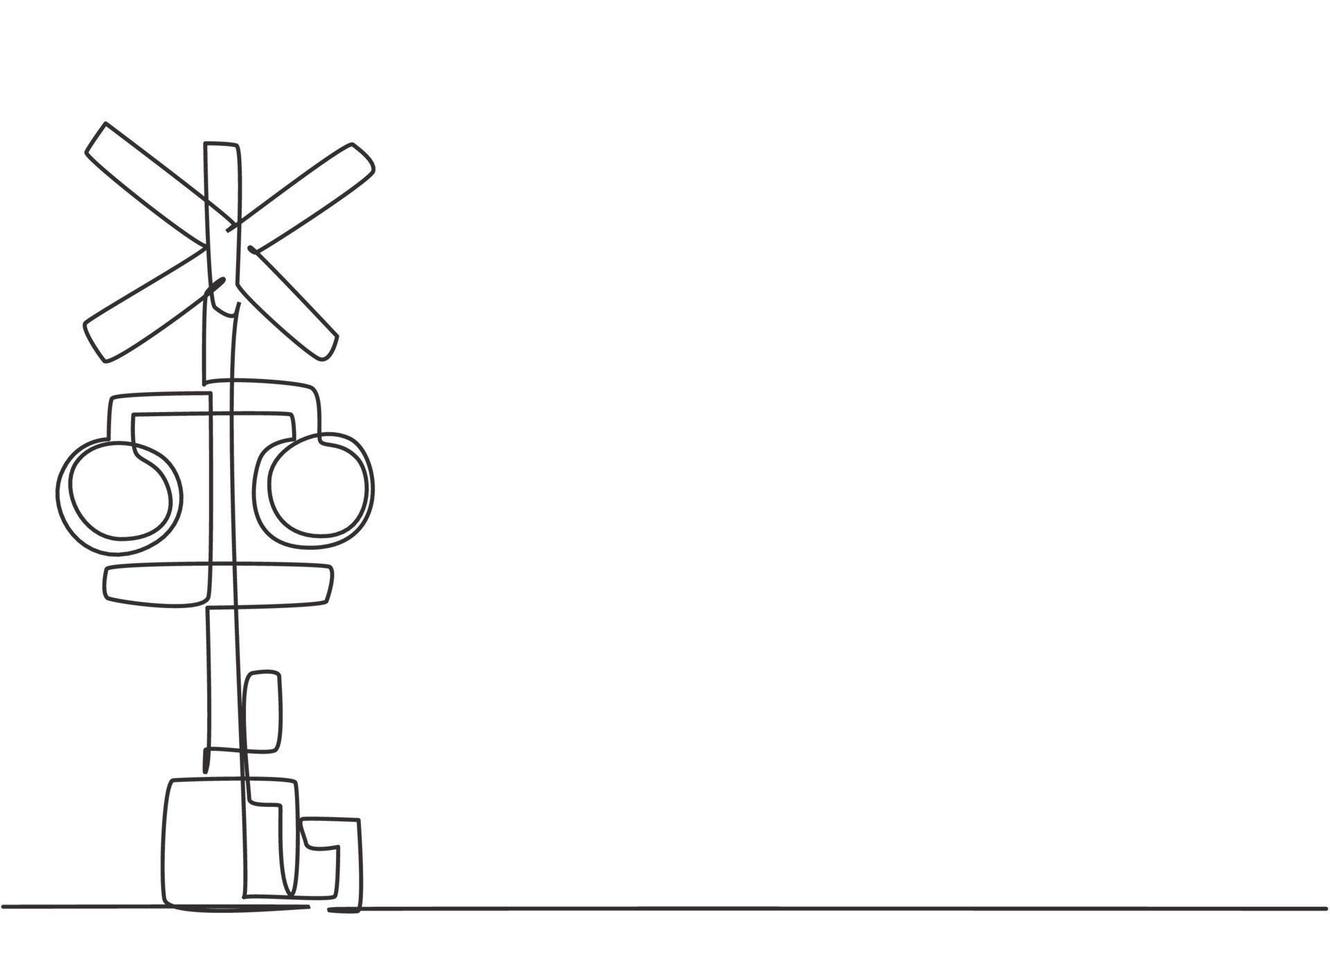 disegno a tratto unico di barriera ferroviaria con segnaletica e luci di segnalazione in posizione aperta che consente ai veicoli di attraversare le linee ferroviarie. illustrazione vettoriale grafica di disegno di disegno di linea continua moderna